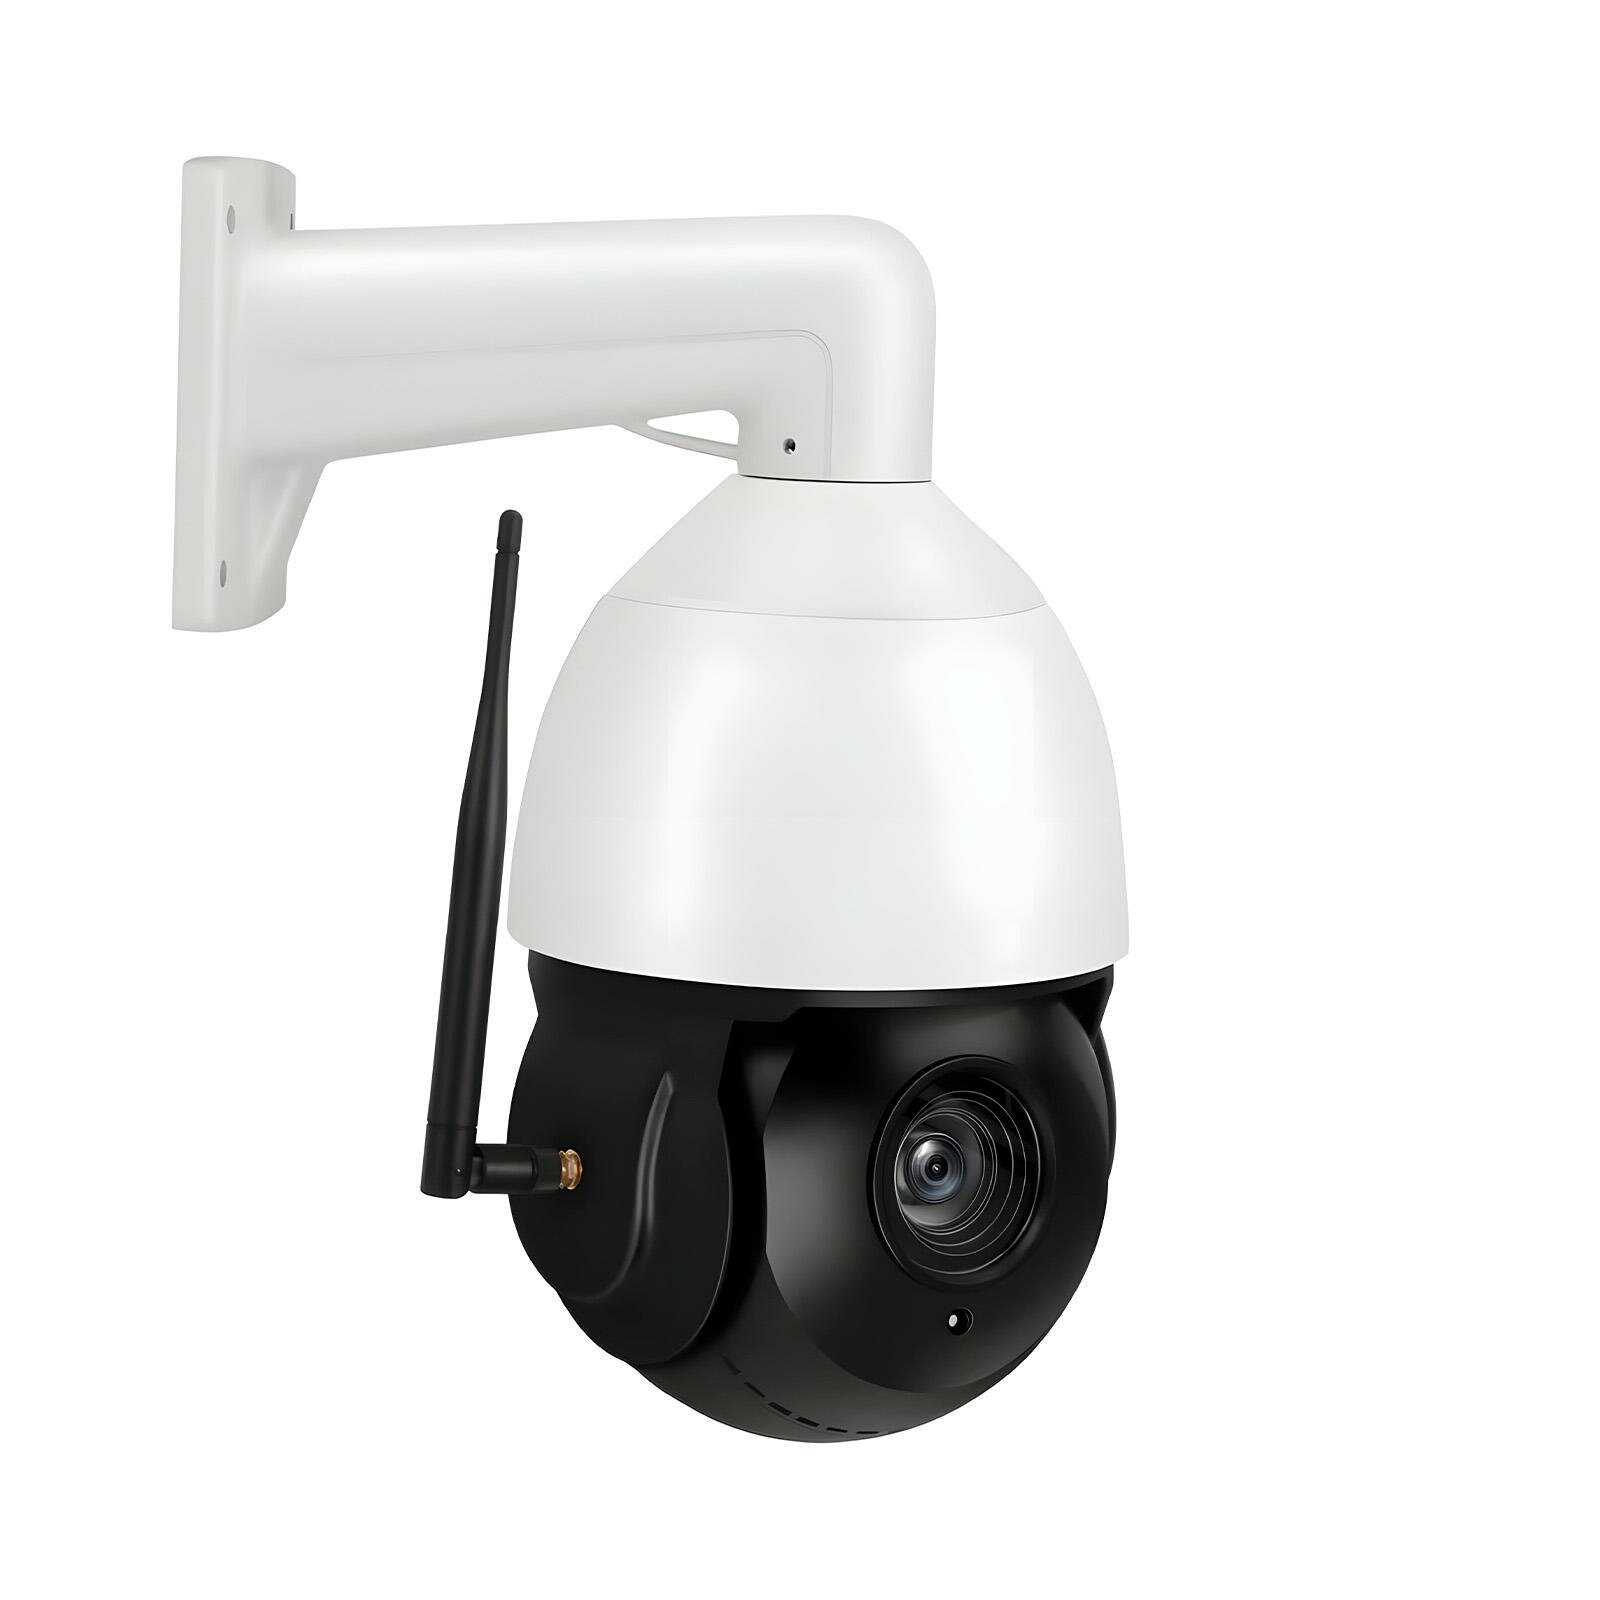 Беспроводная уличная охранная 4G-sim купольная 4MP IP-камера наблюдения HDcom K630-30X-4MP-4G (4MP) (W5090RU) с 30Х ZOOM, записью на SD карту по датч